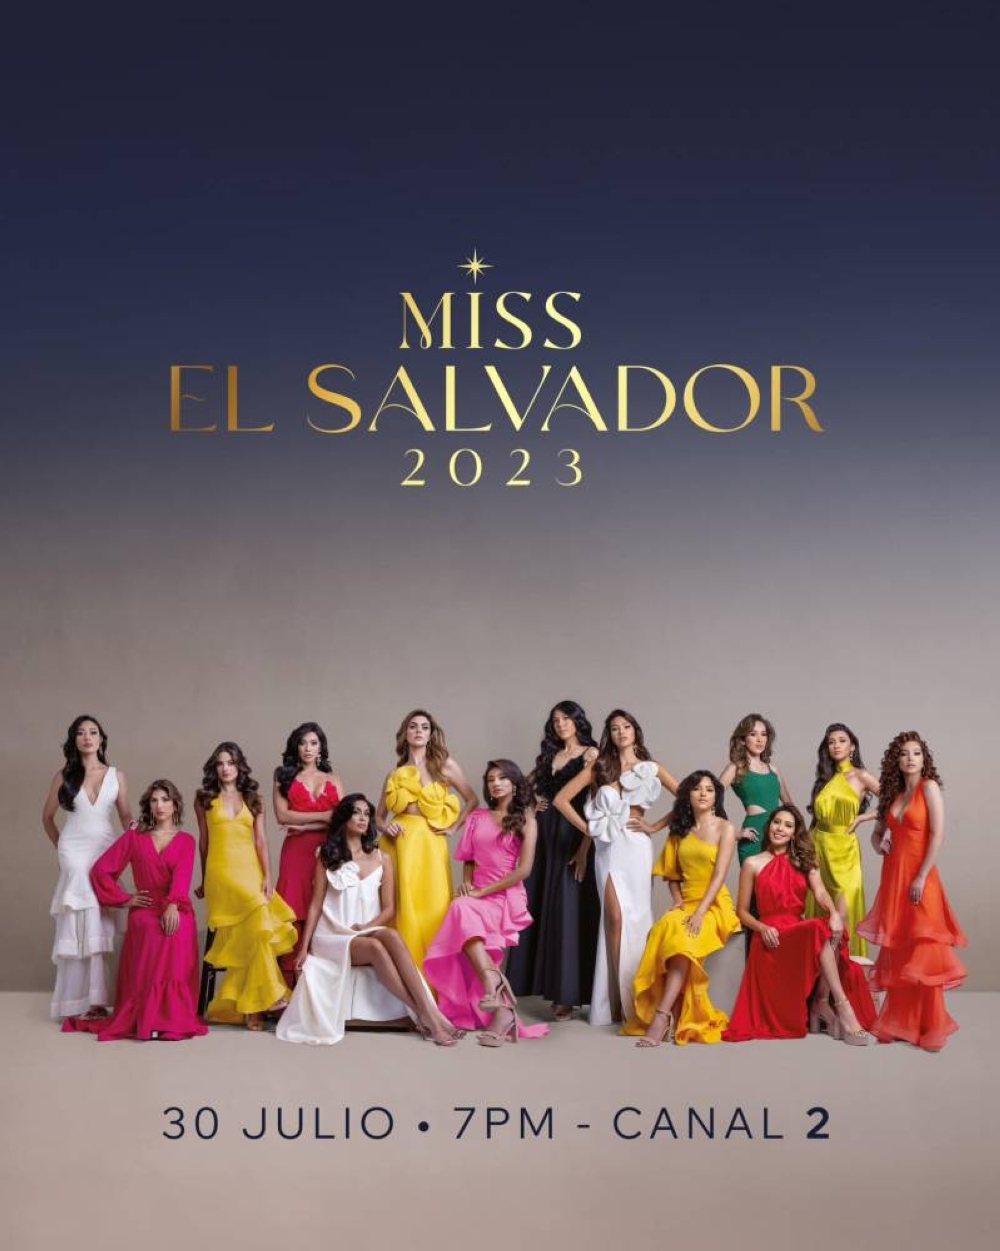 Emociones por conocer a la nueva Miss El Salvador 2023 Diario El Mundo